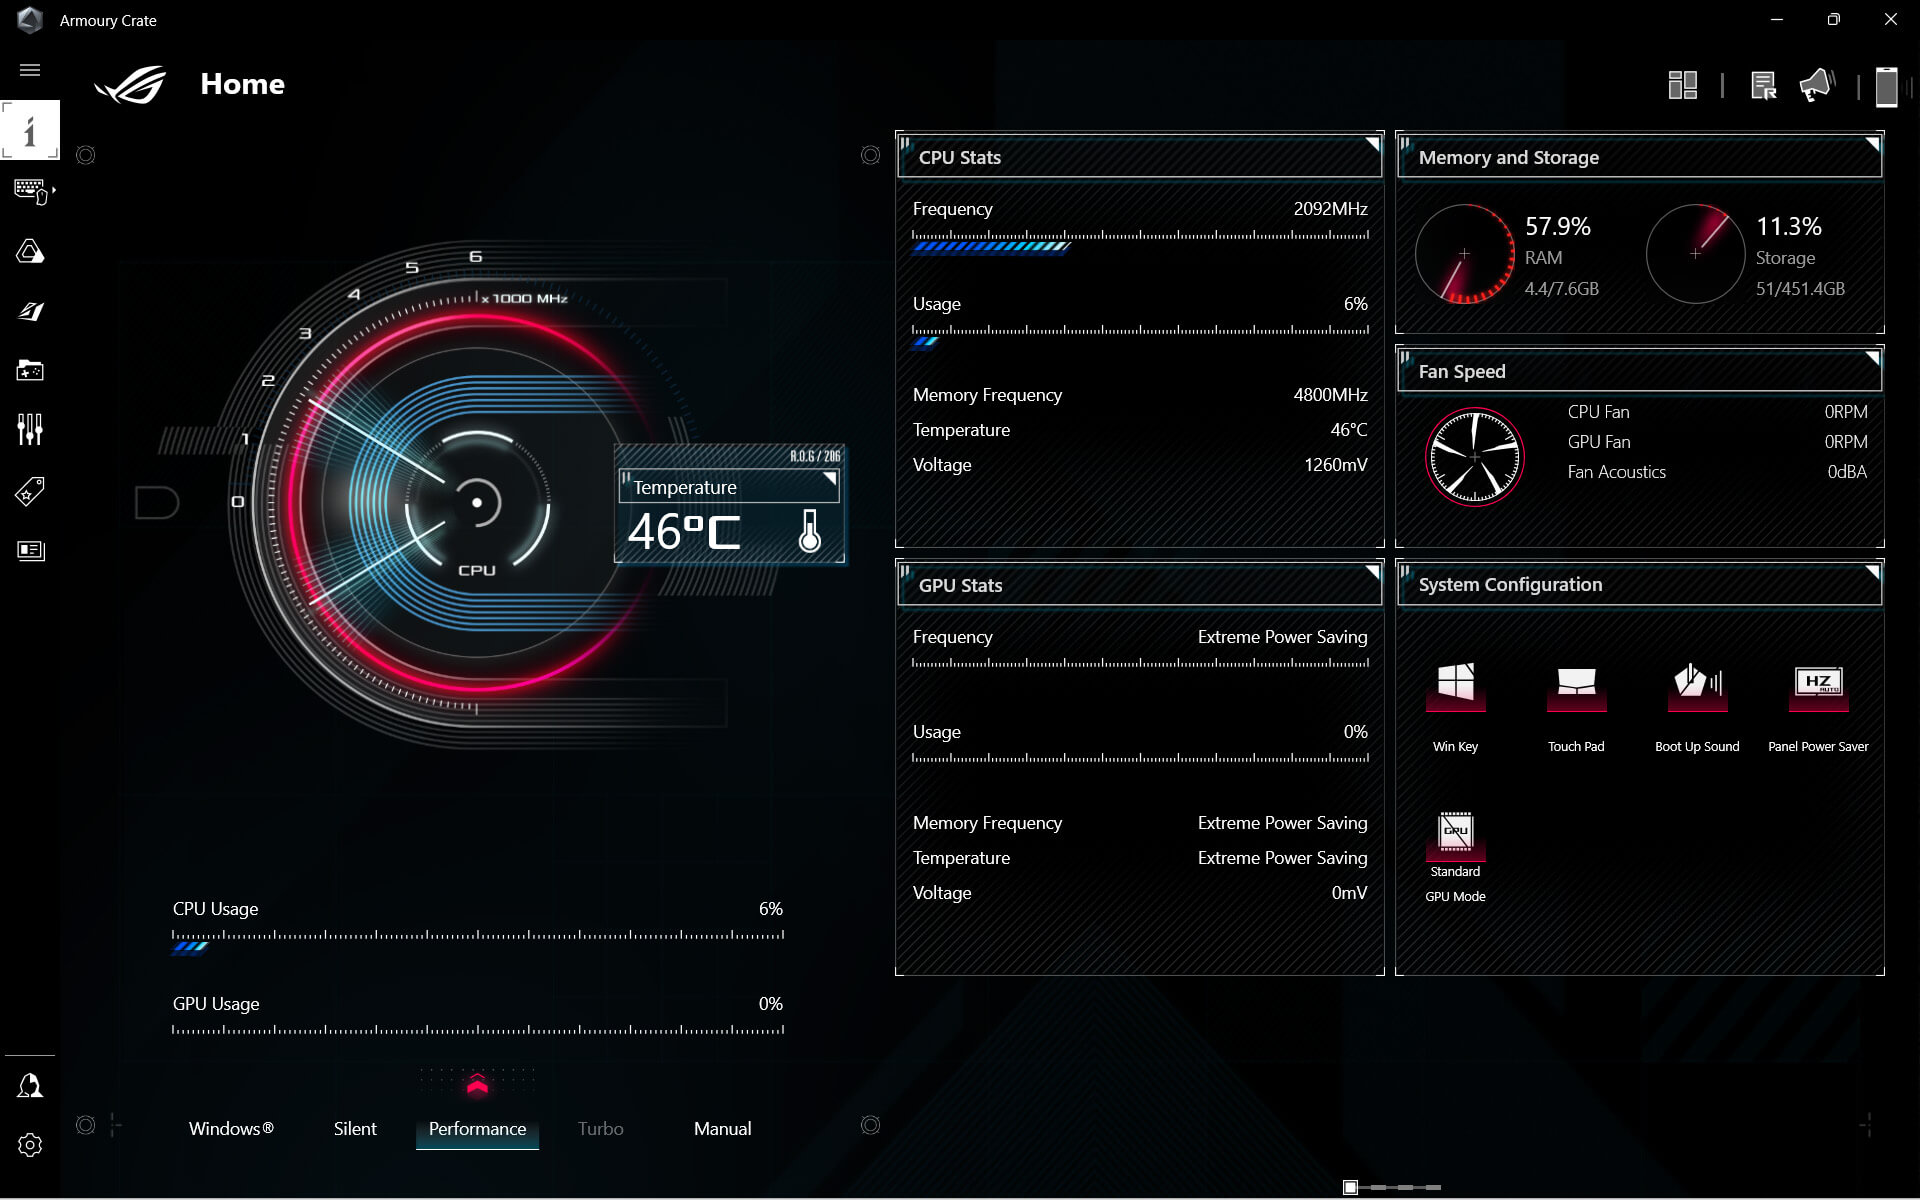 A interface de utilizador do software Armoury Crate, mostrando a visão global do estado do sistema.